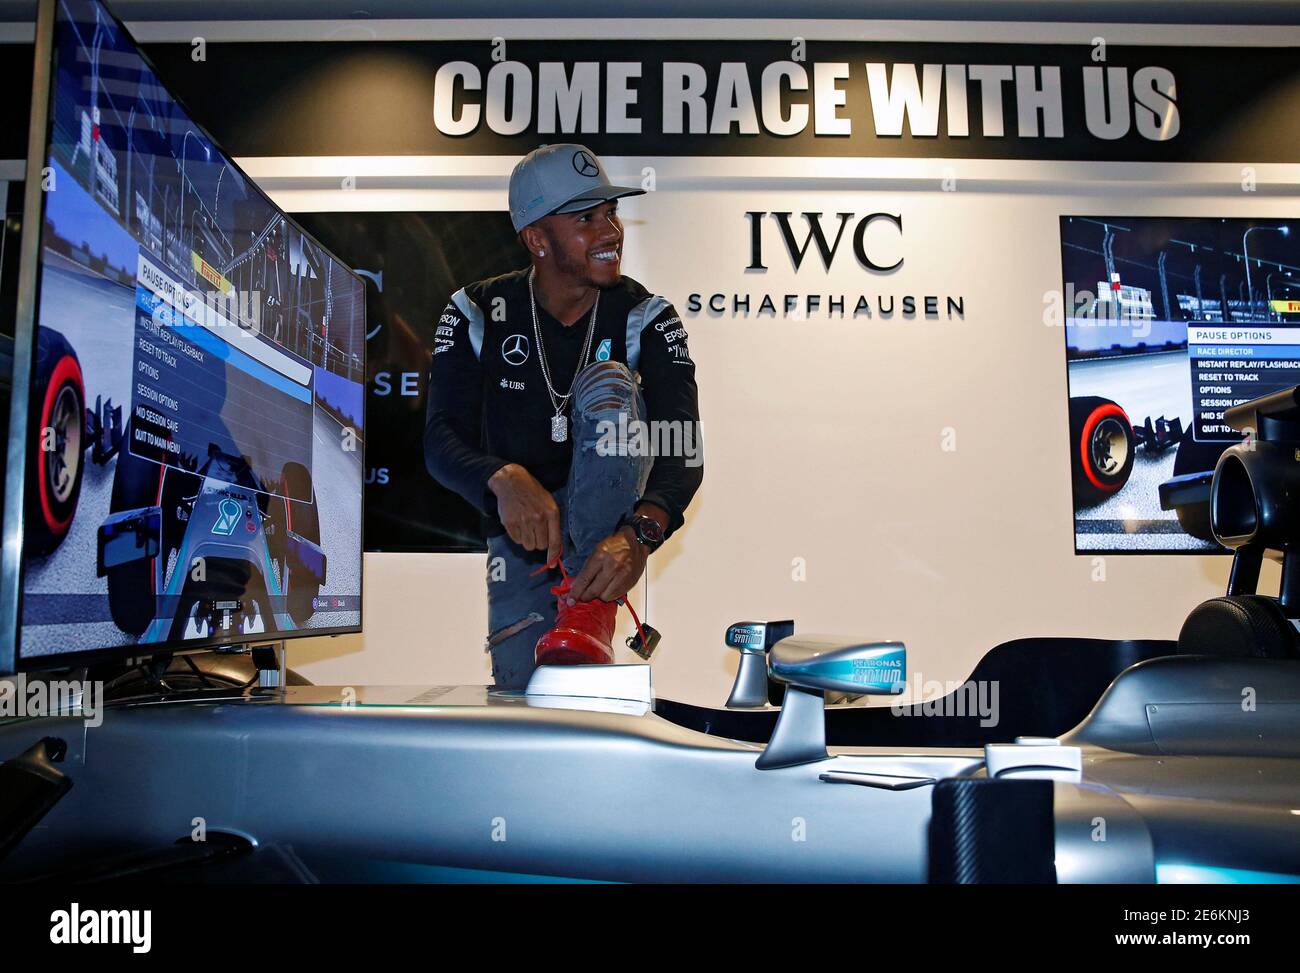 Mercedes Lewis Hamilton von Großbritannien Schnürsenkel seinen Schuh auf einem Fahrsimulator bei einer Werbung Veranstaltung vor dem Singapur F1 Grand Prix Nachtrennen 14. September 2016. REUTERS/Edgar Su Stockfoto